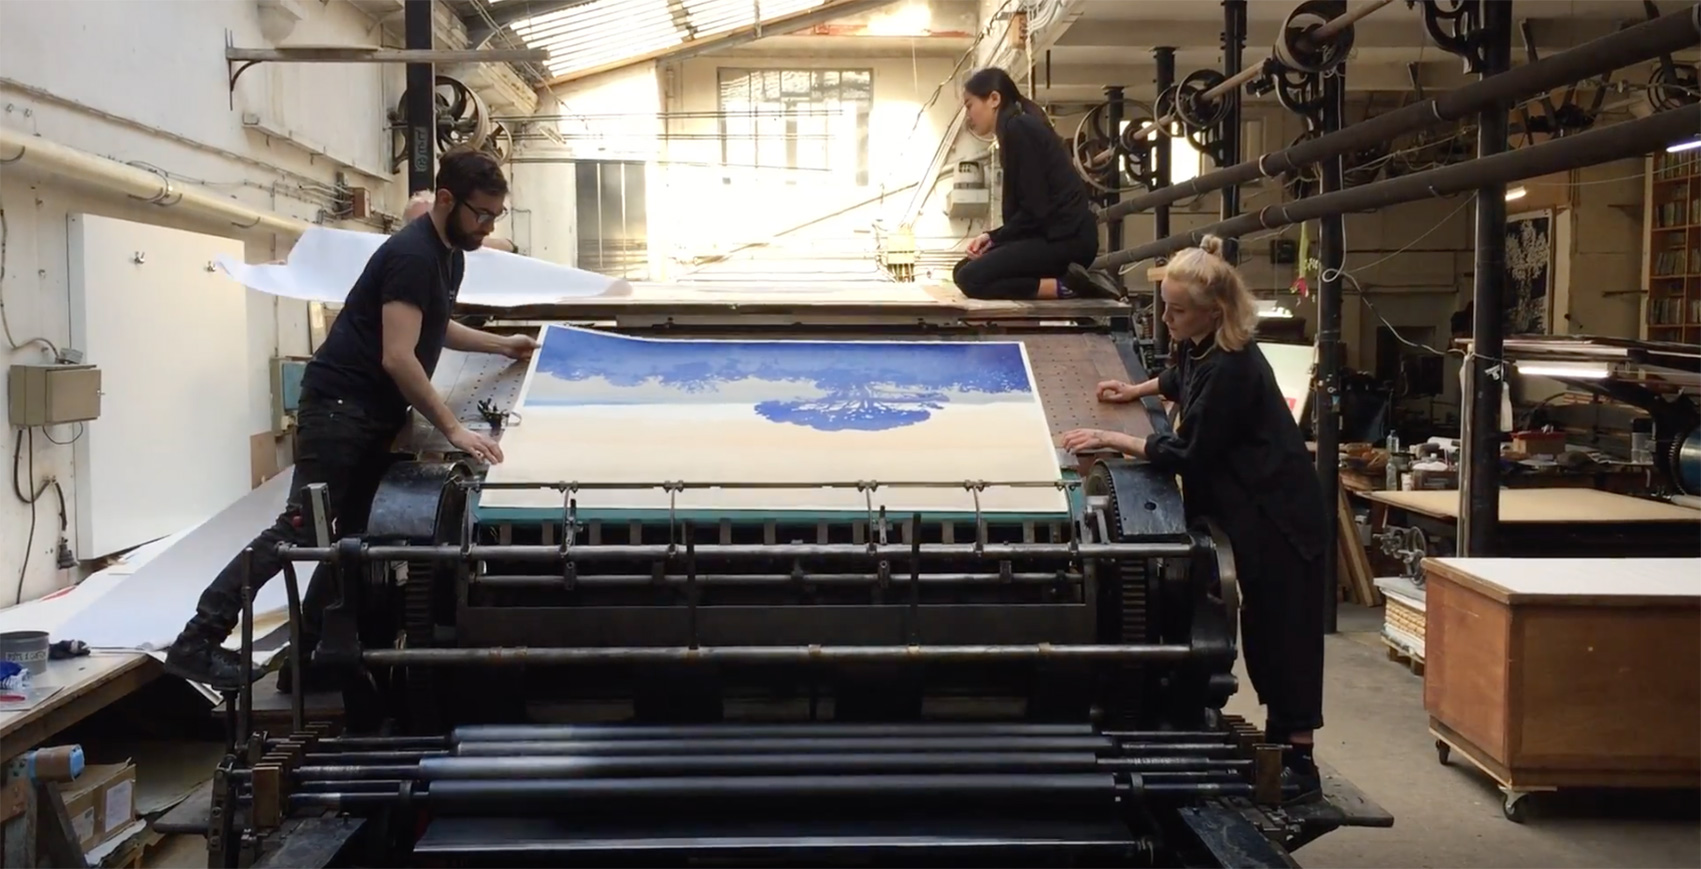 Video - Impression du noir depuis l'arrière de la grande presse, atelier Idem, Paris